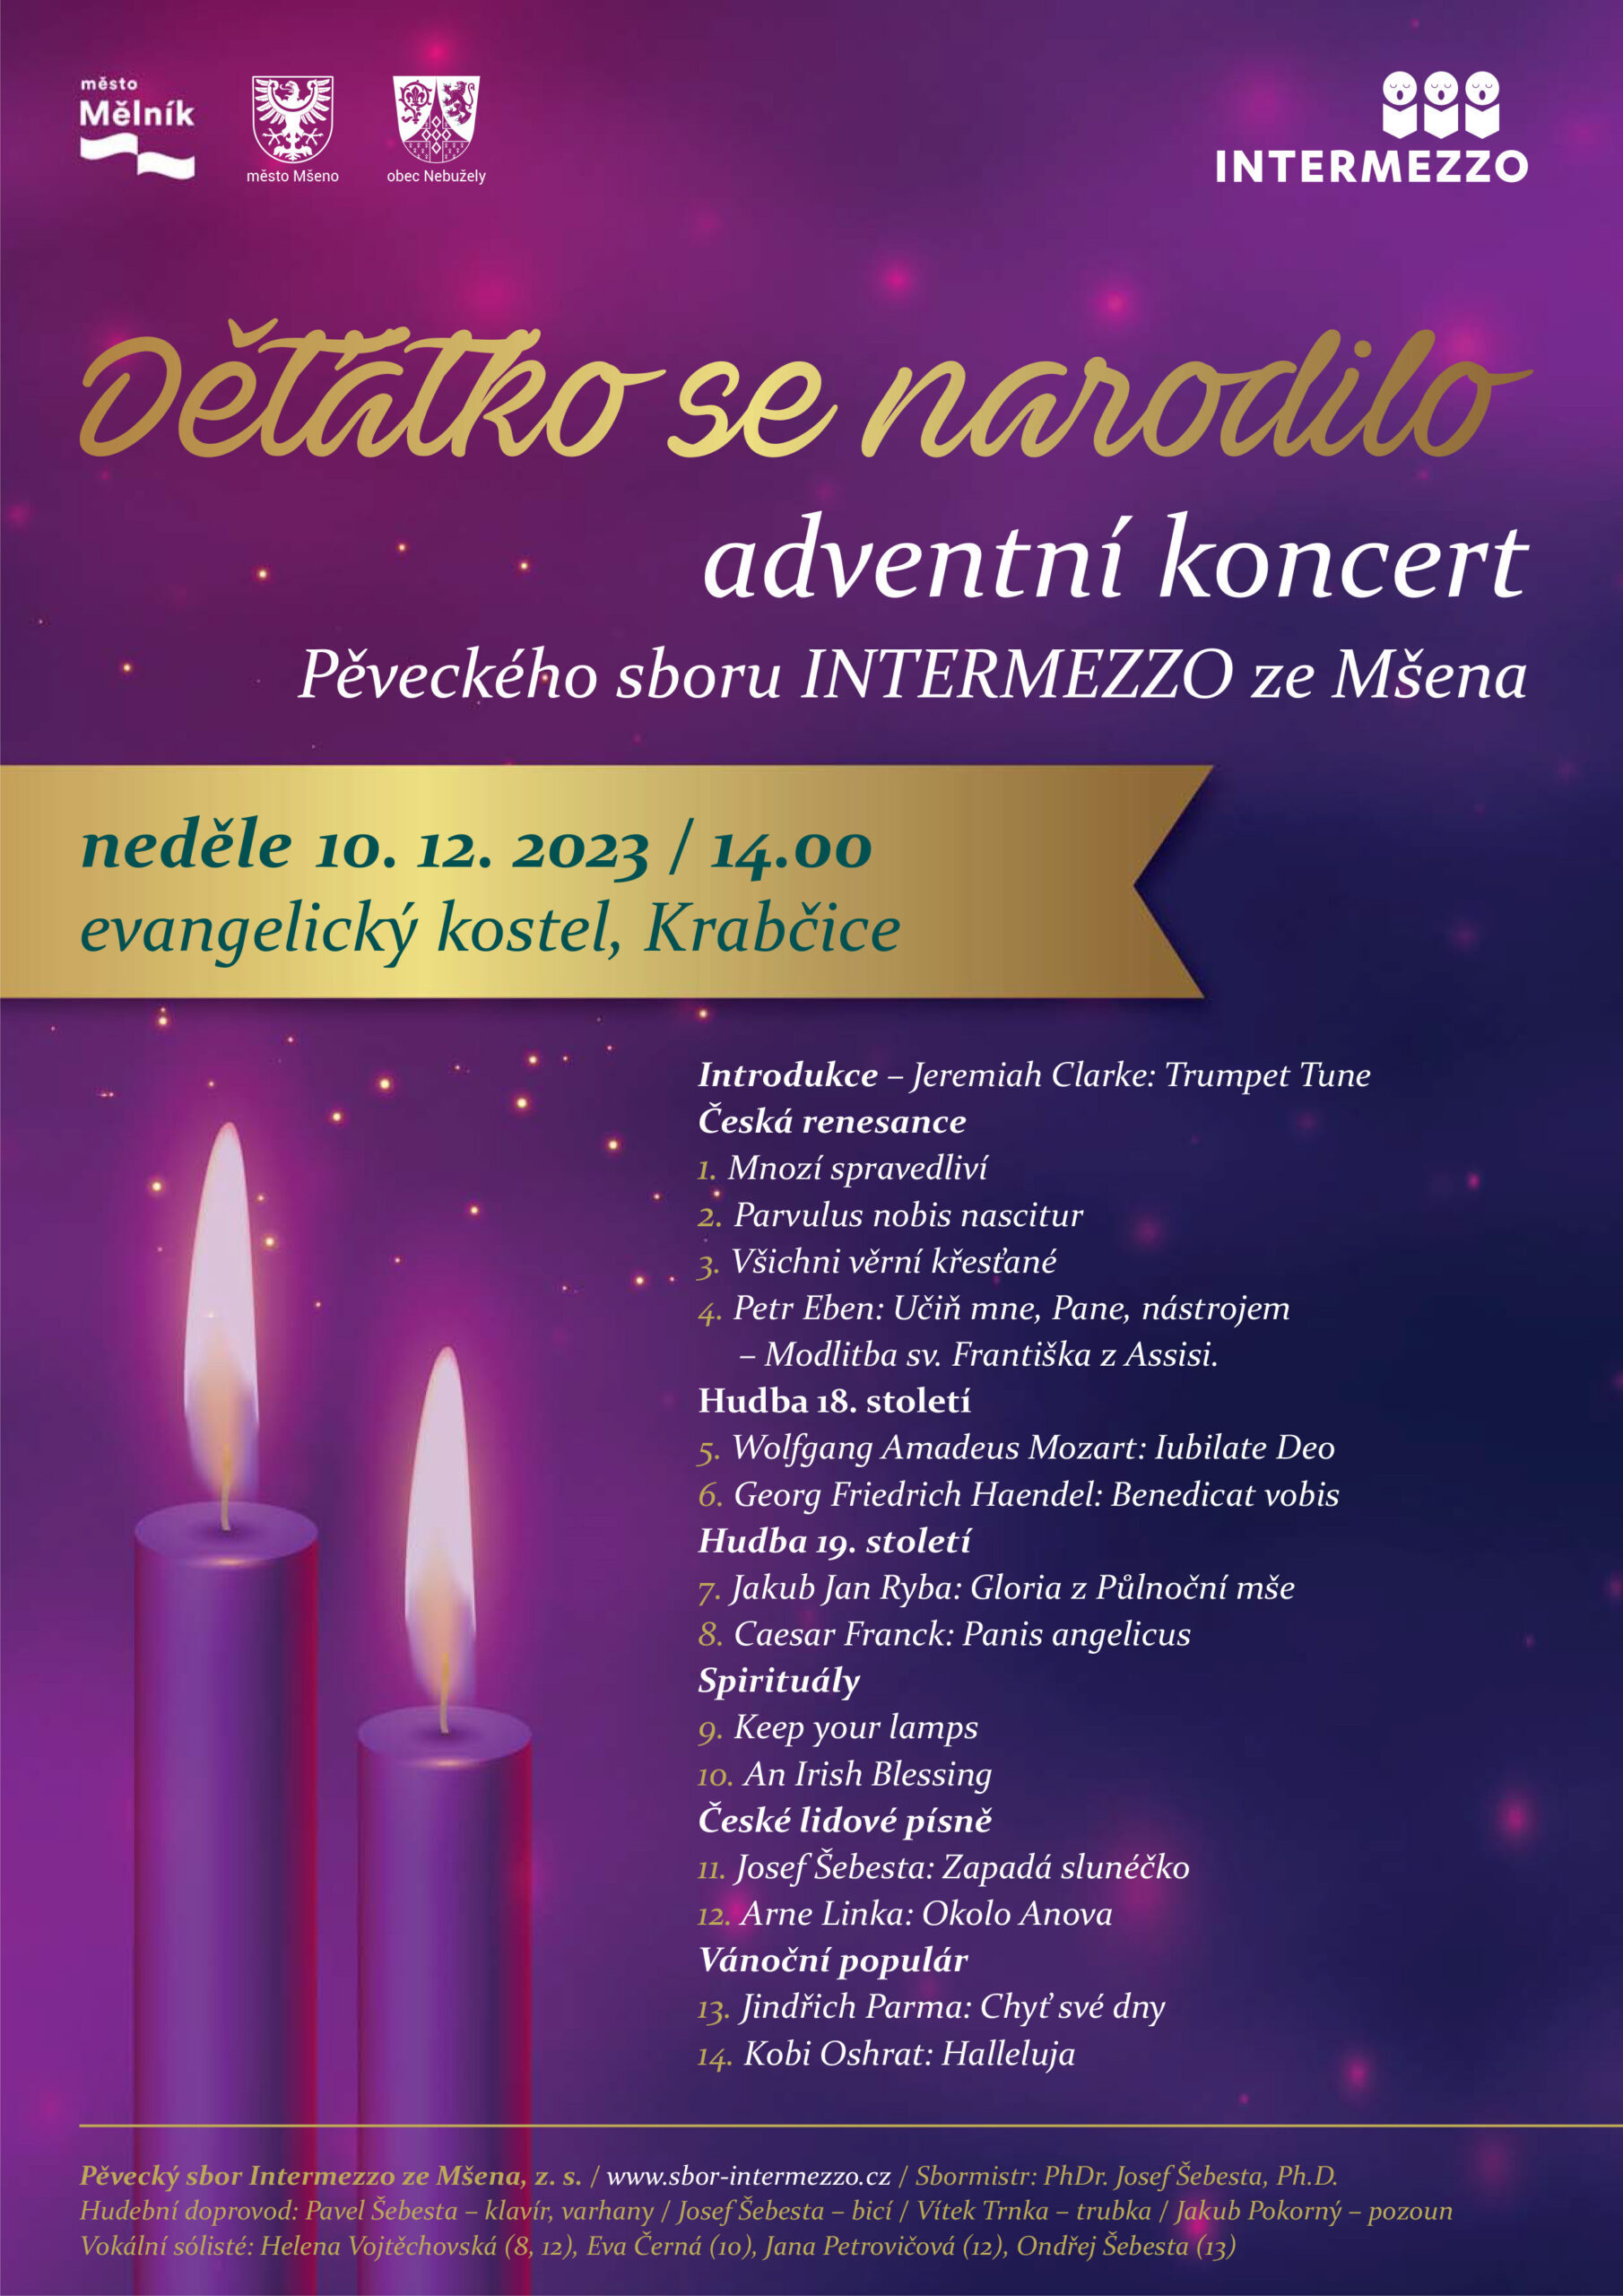 Adventní koncert v evangelickém kostele, Krabčice